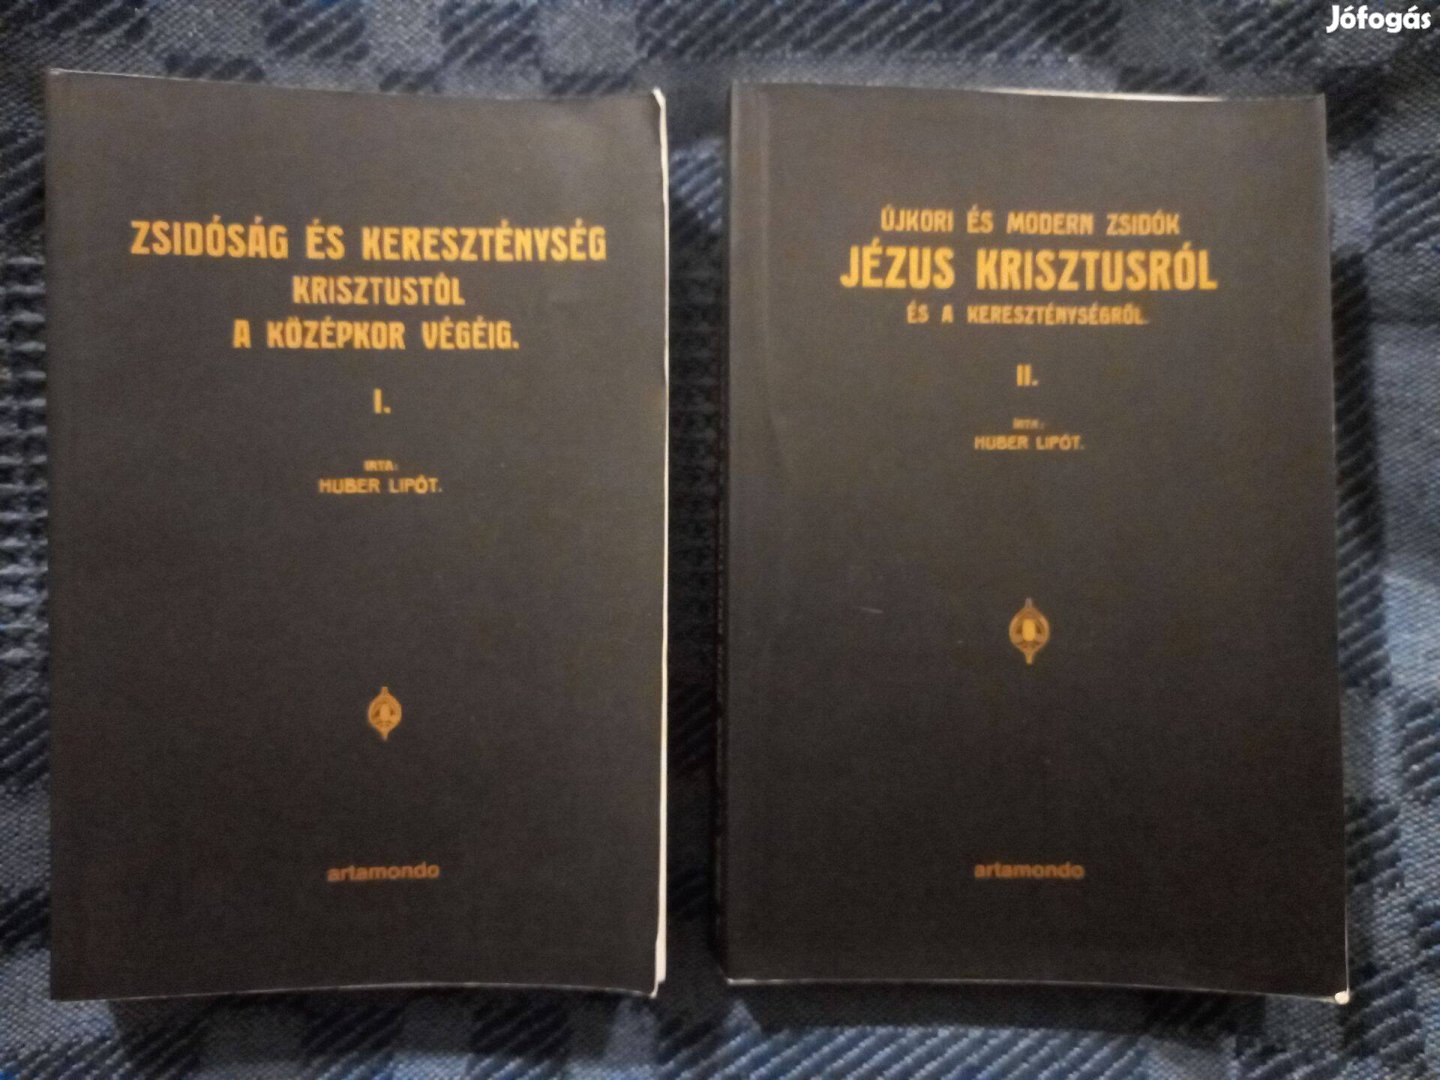 Huber Lipót: Zsidóság és kereszténység. I-II. kötetek eladók